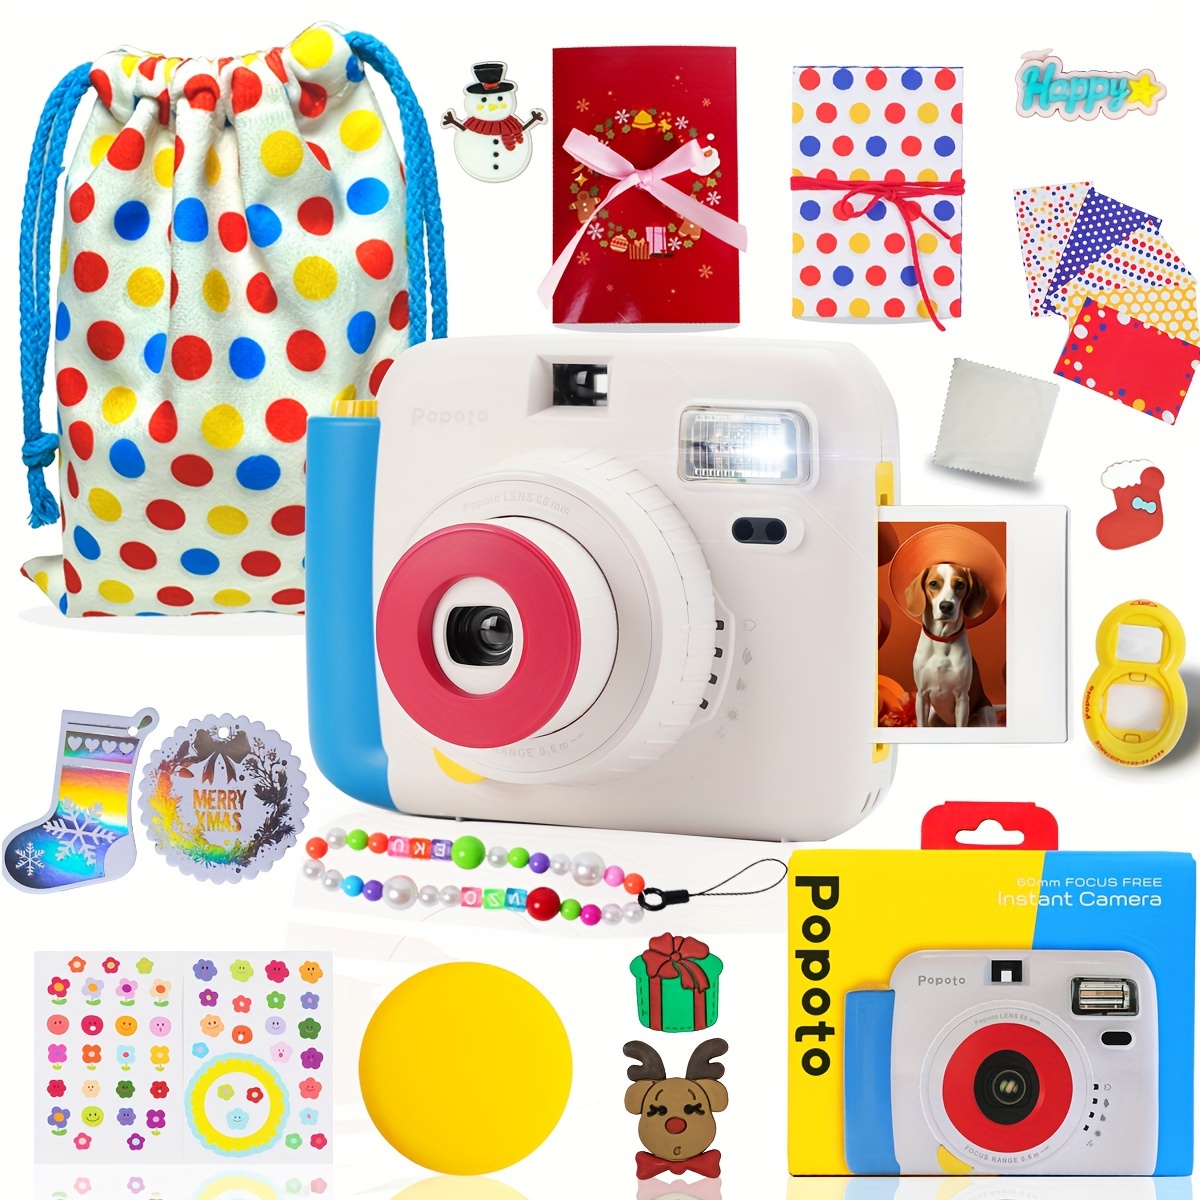 Popoto Instant Camera Gift Bundle Bag Ablum Suitable - Temu Canada